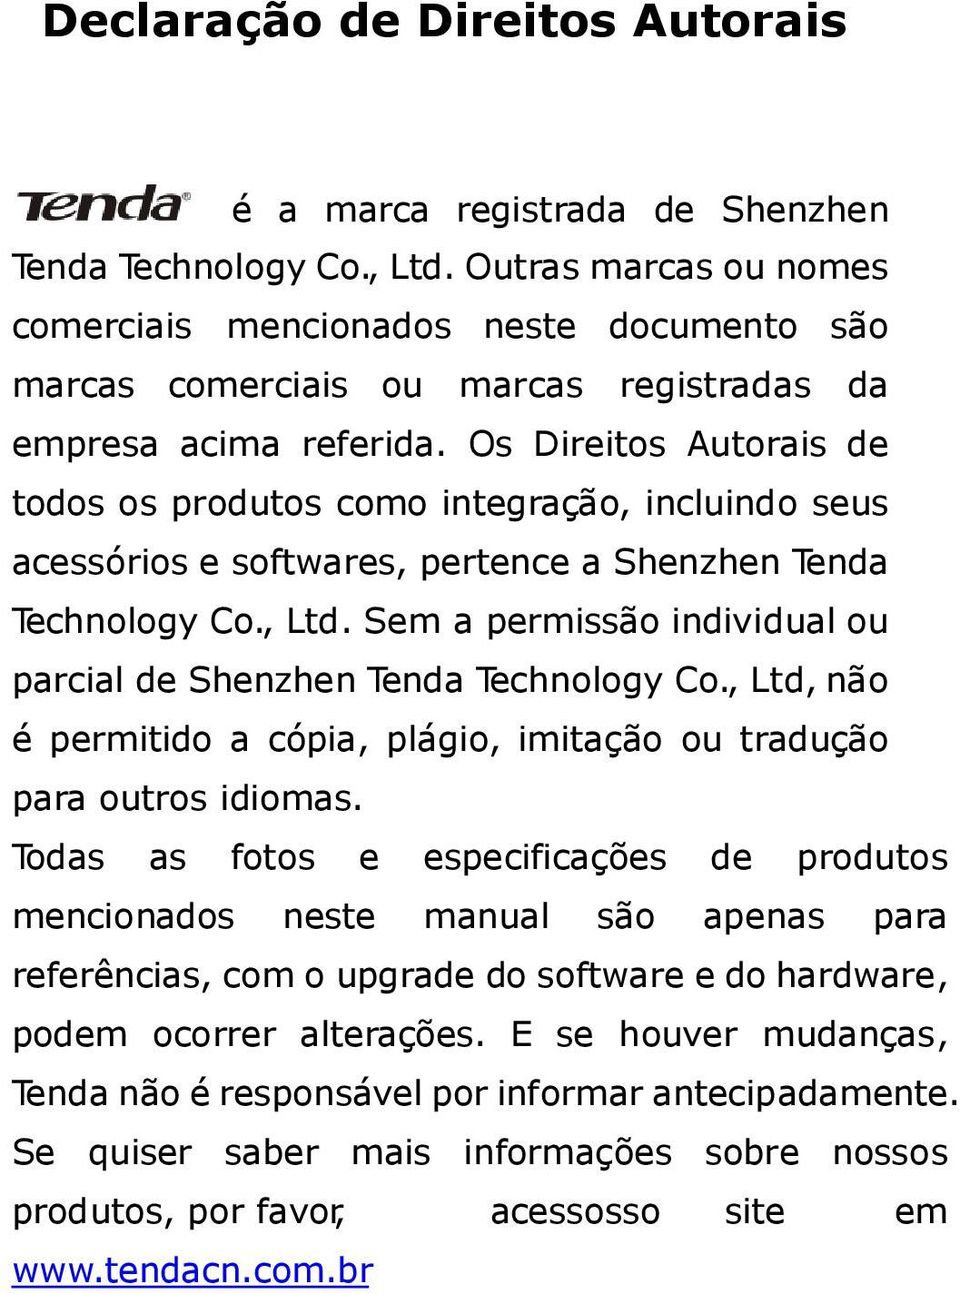 Os Direitos Autorais de todos os produtos como integração, incluindo seus acessórios e softwares, pertence a Shenzhen Tenda Technology Co., Ltd.